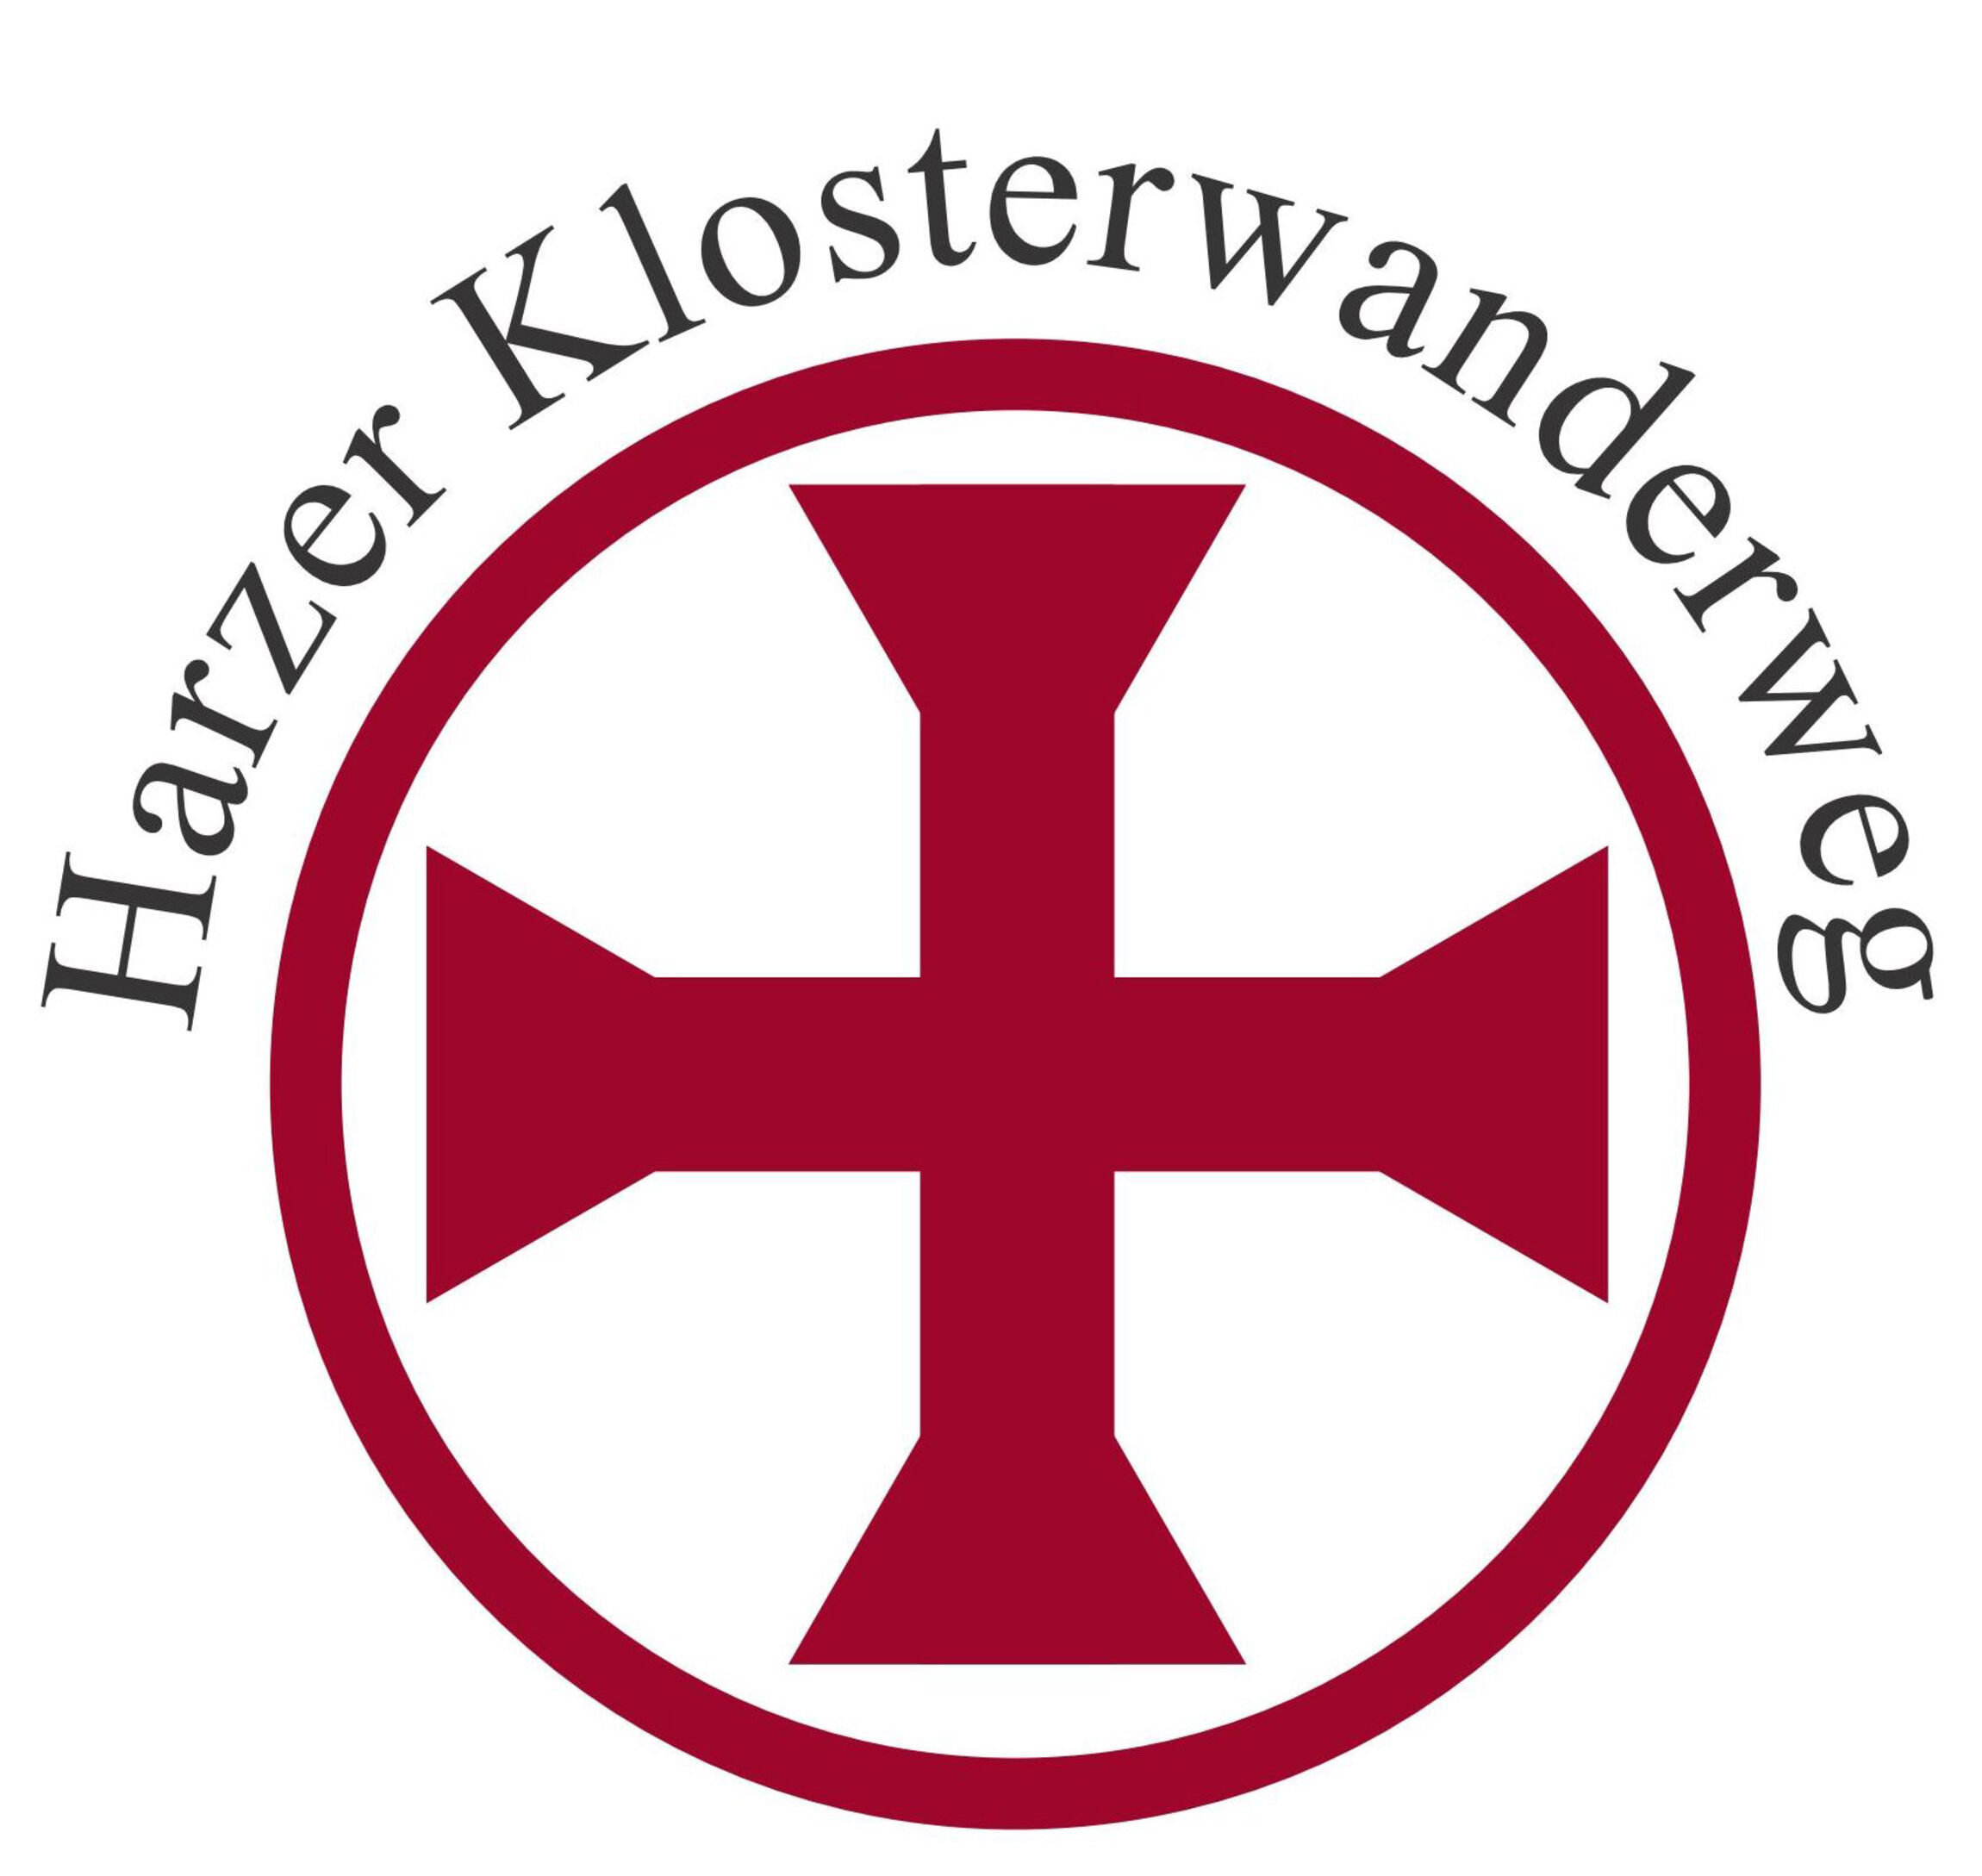 Harzer Klosterw